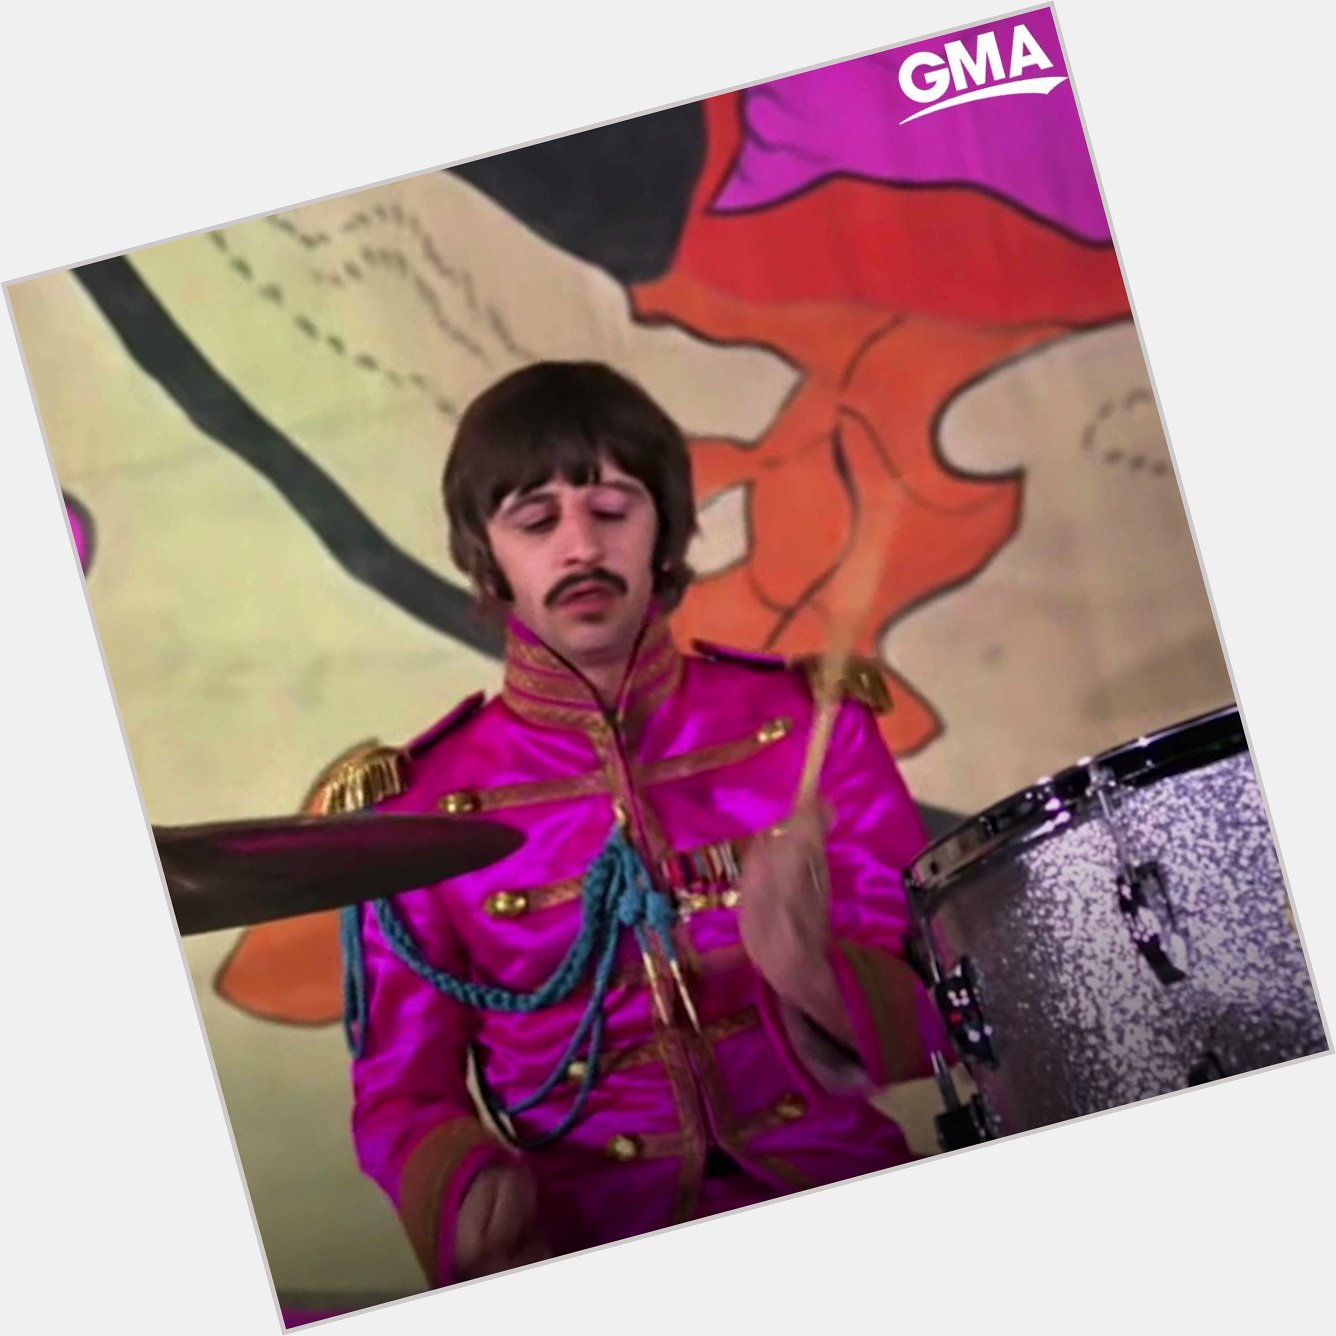 Happy birthday, Ringo Starr!  